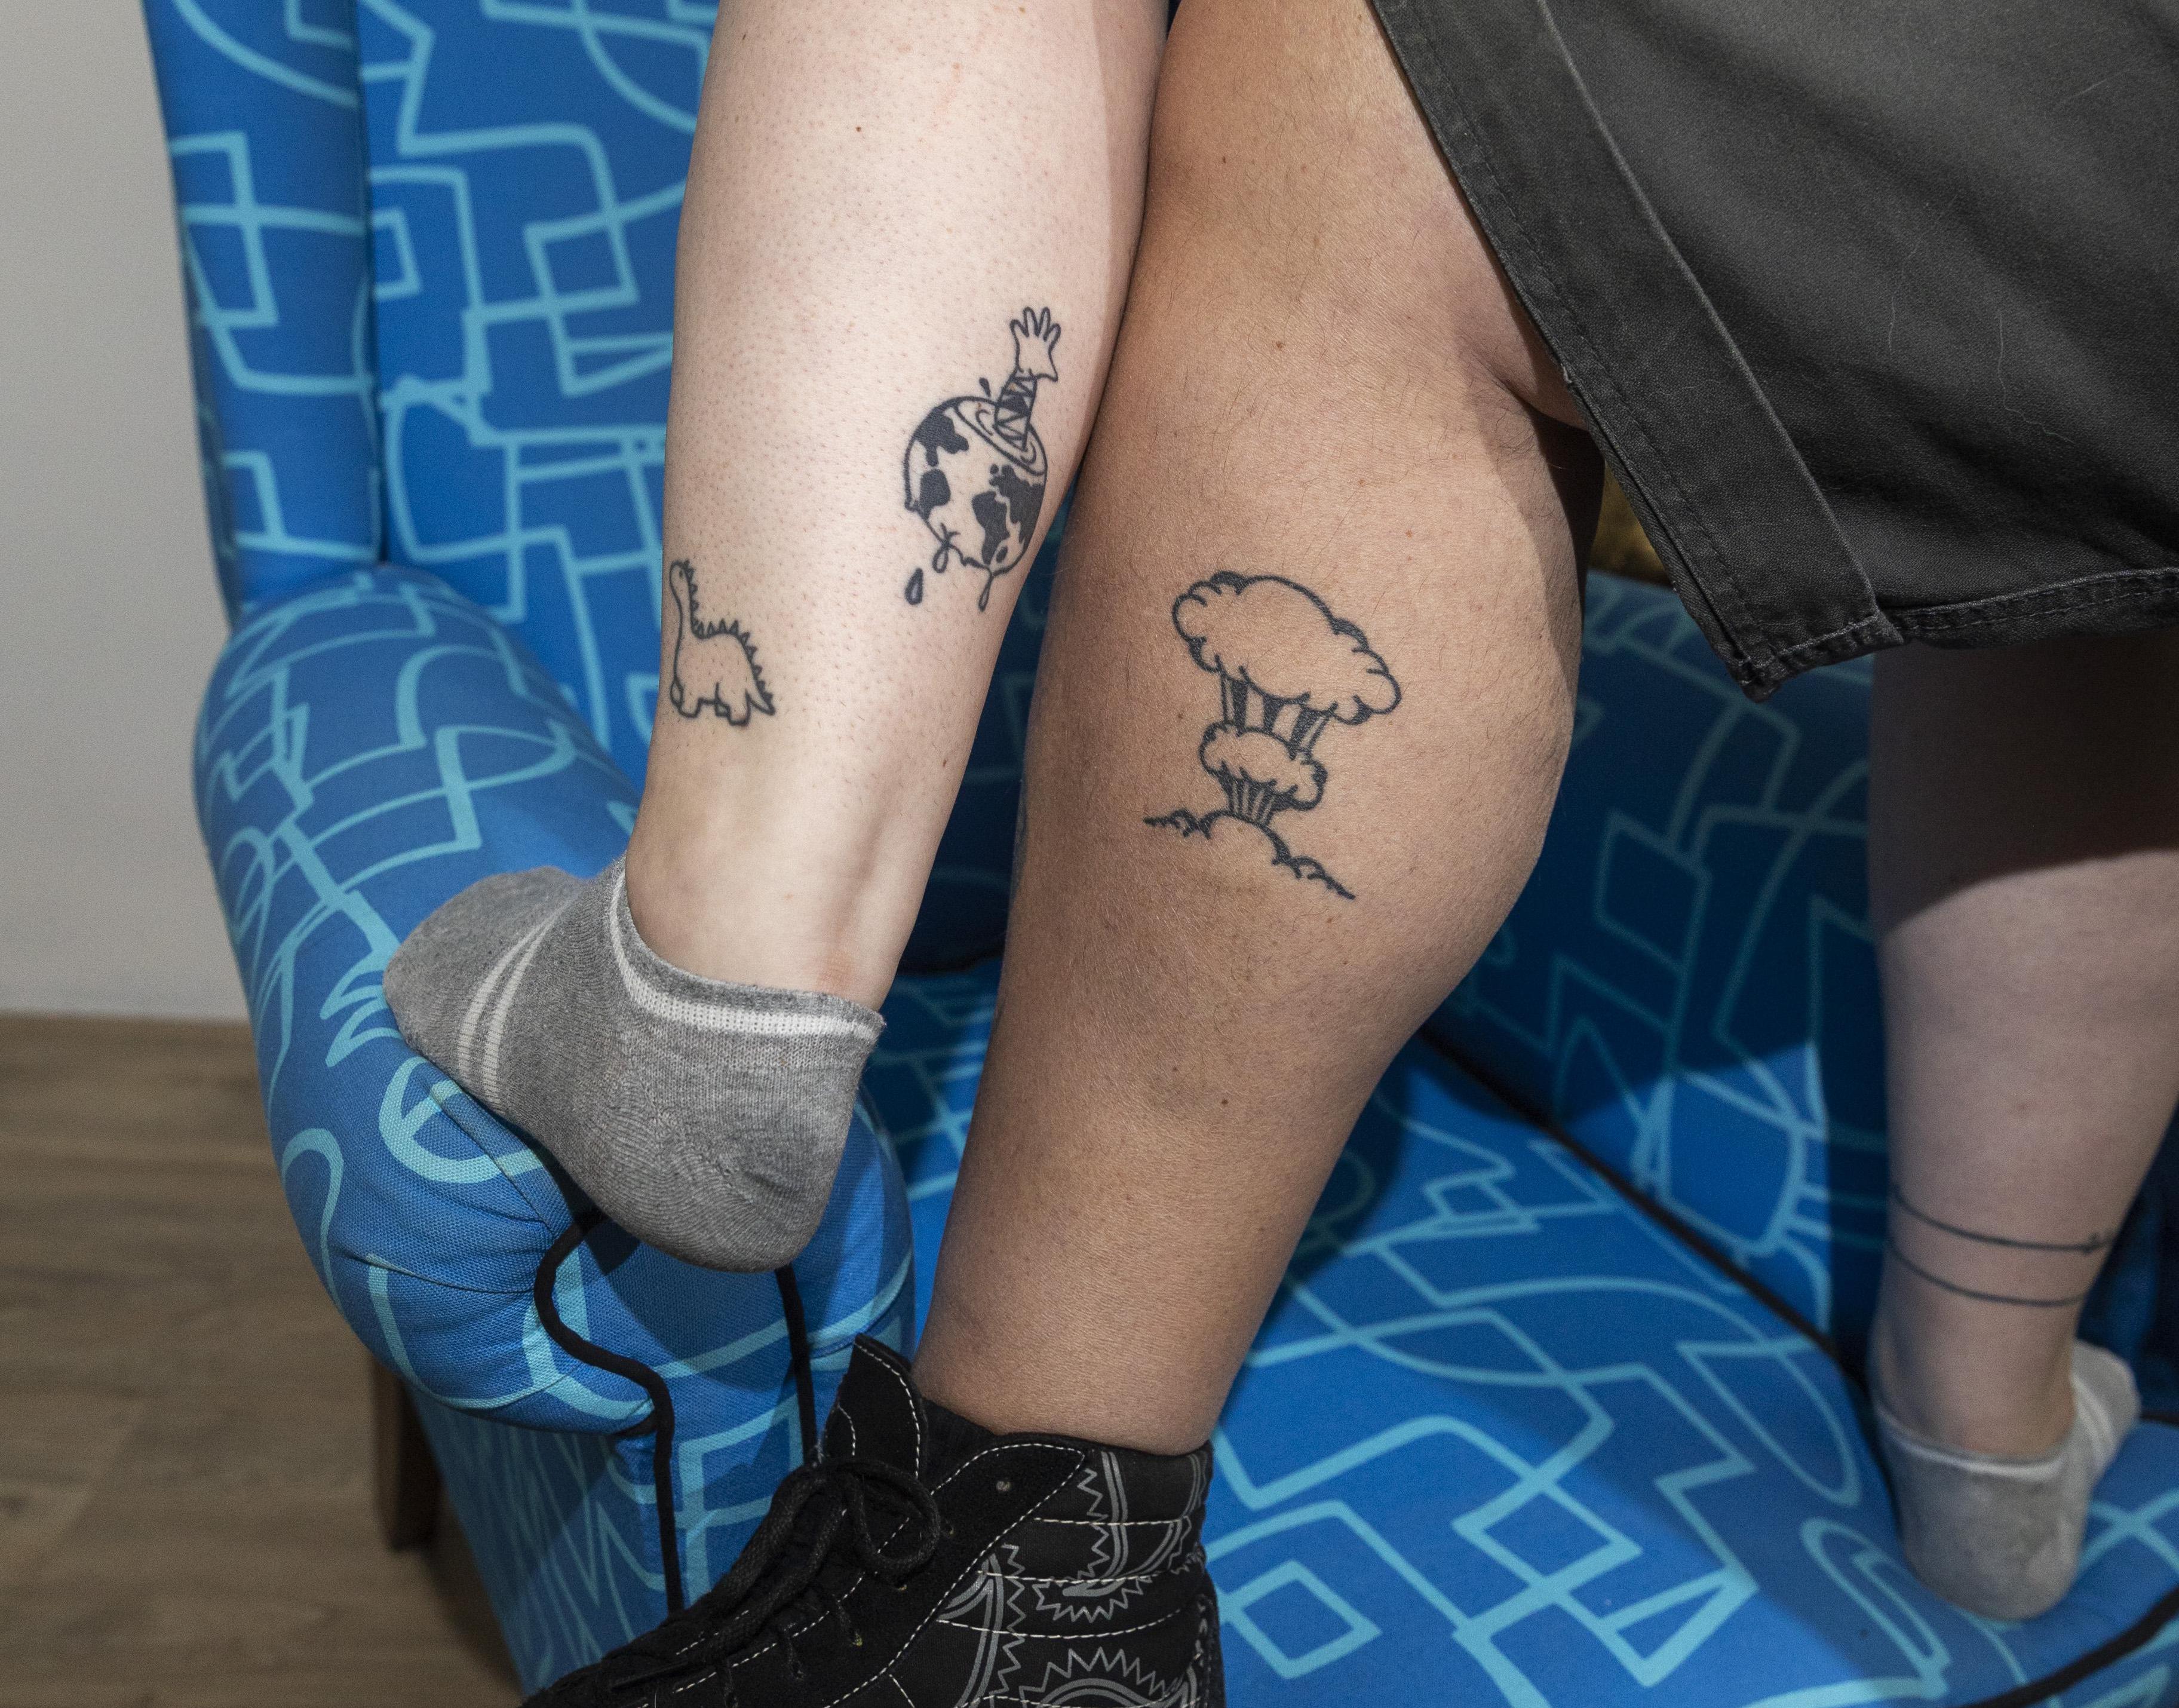 Mordrin Impasse geest Vader Hans en dochter Edie delen een bijzondere tattoo. 'Ze zien er anders  uit, maar horen bij elkaar' | Noordhollandsdagblad